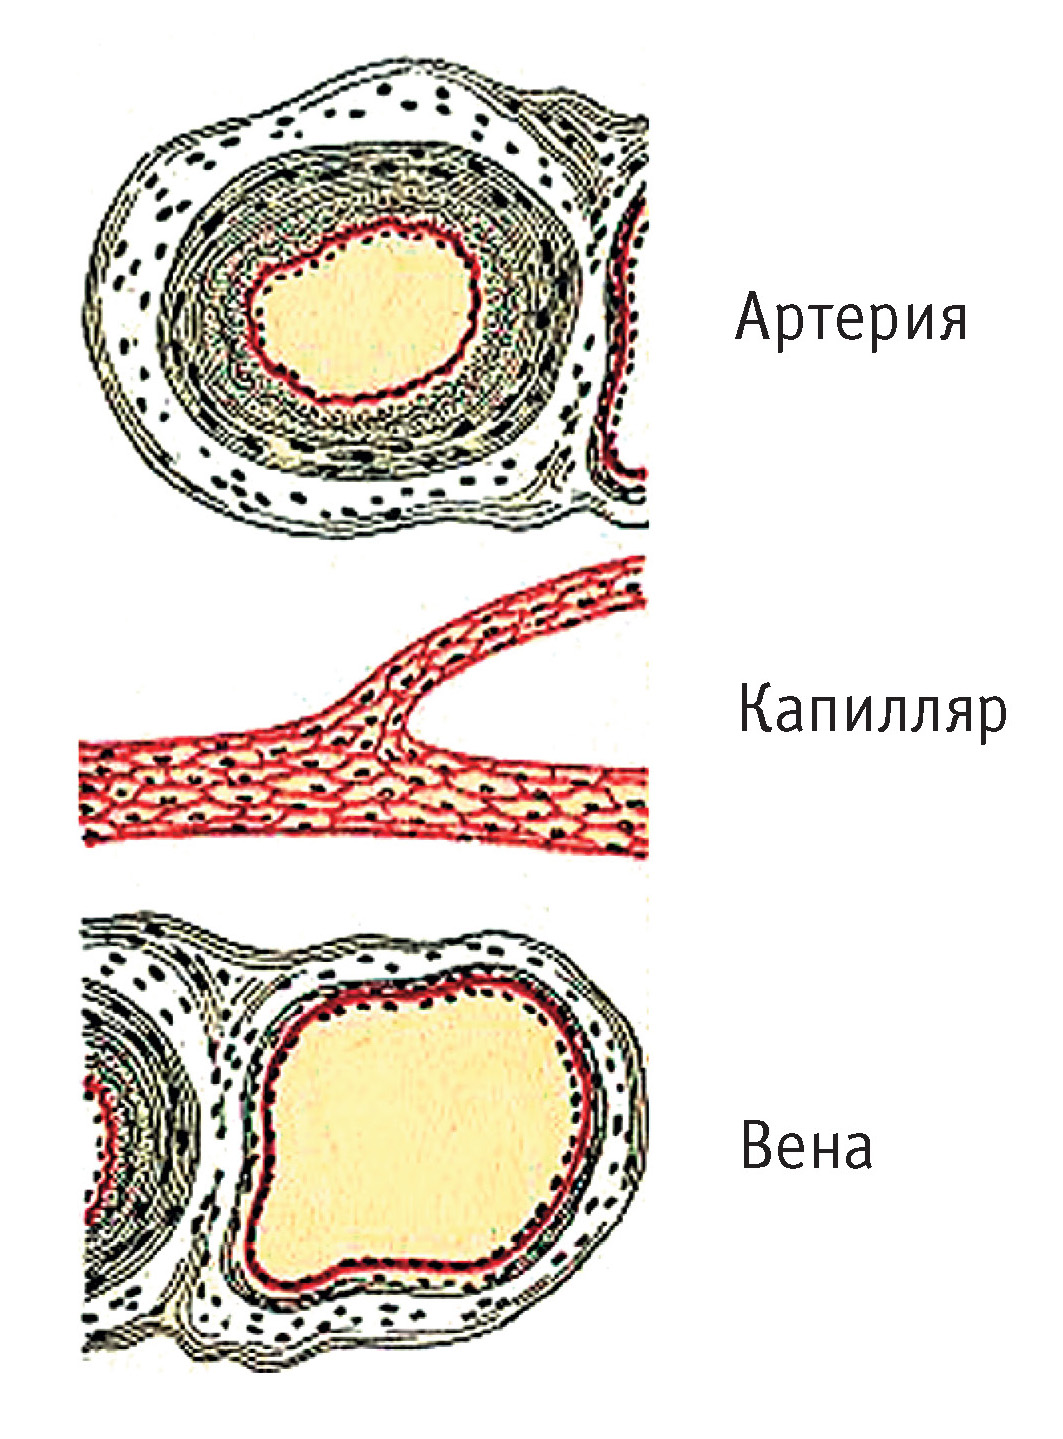 Рис. 2. Строение стенки кровеносных сосудов: артерия, капилляр, вена 